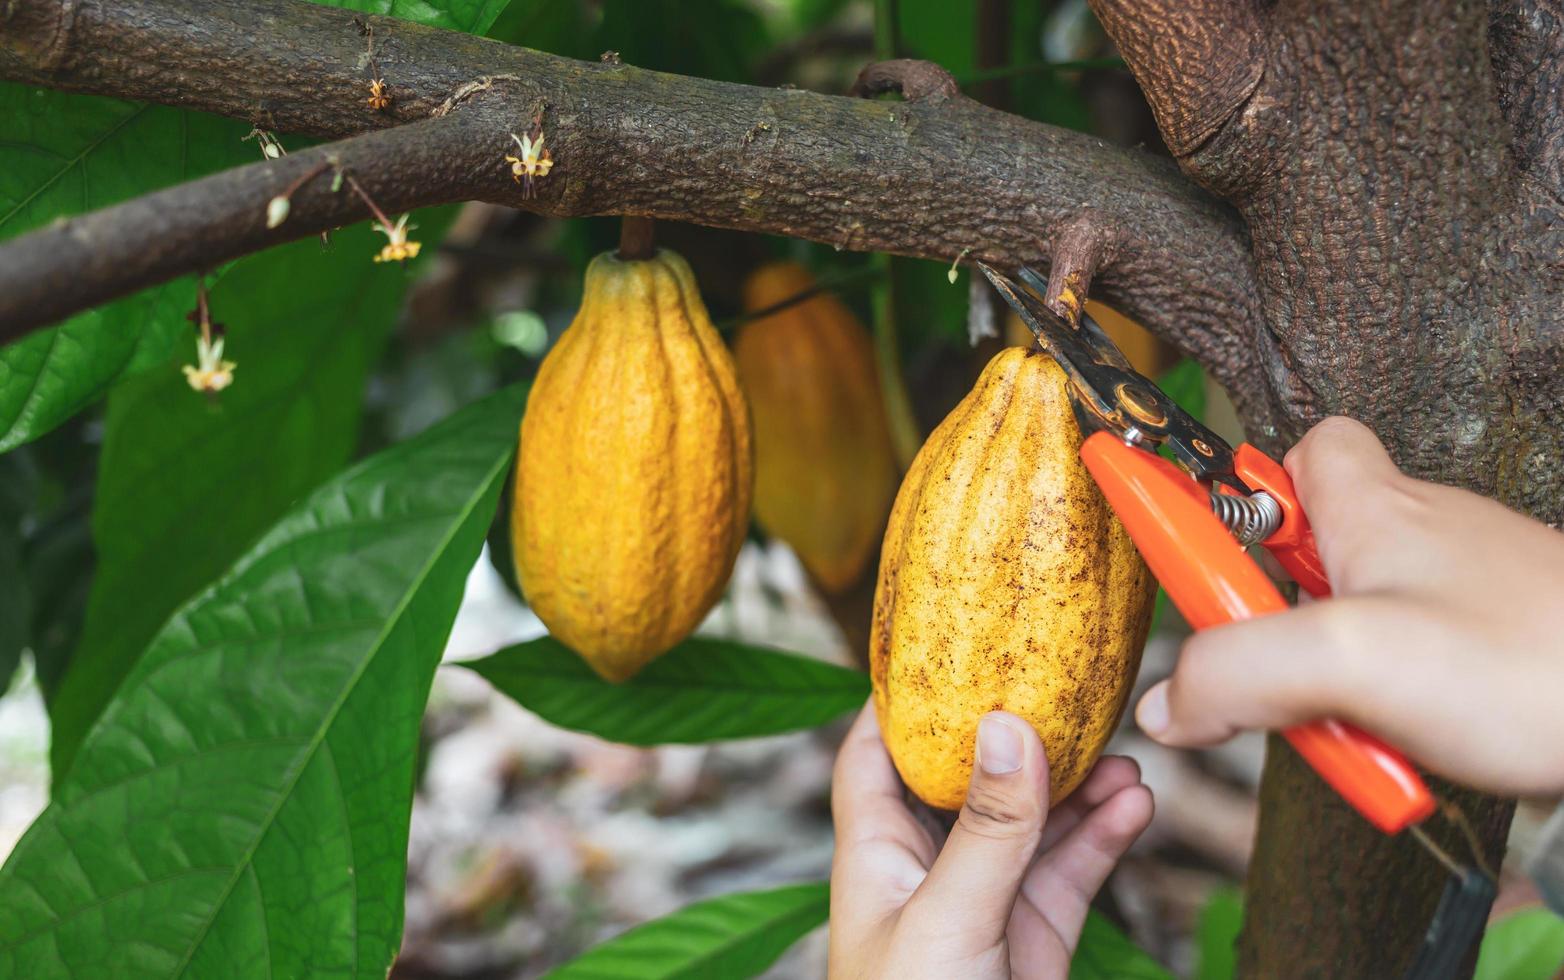 detailopname handen van een cacao boer gebruik snoeien scharen naar besnoeiing de cacao peulen of fruit rijp geel cacao van de cacao boom. oogst de agrarisch cacao bedrijf produceert. foto